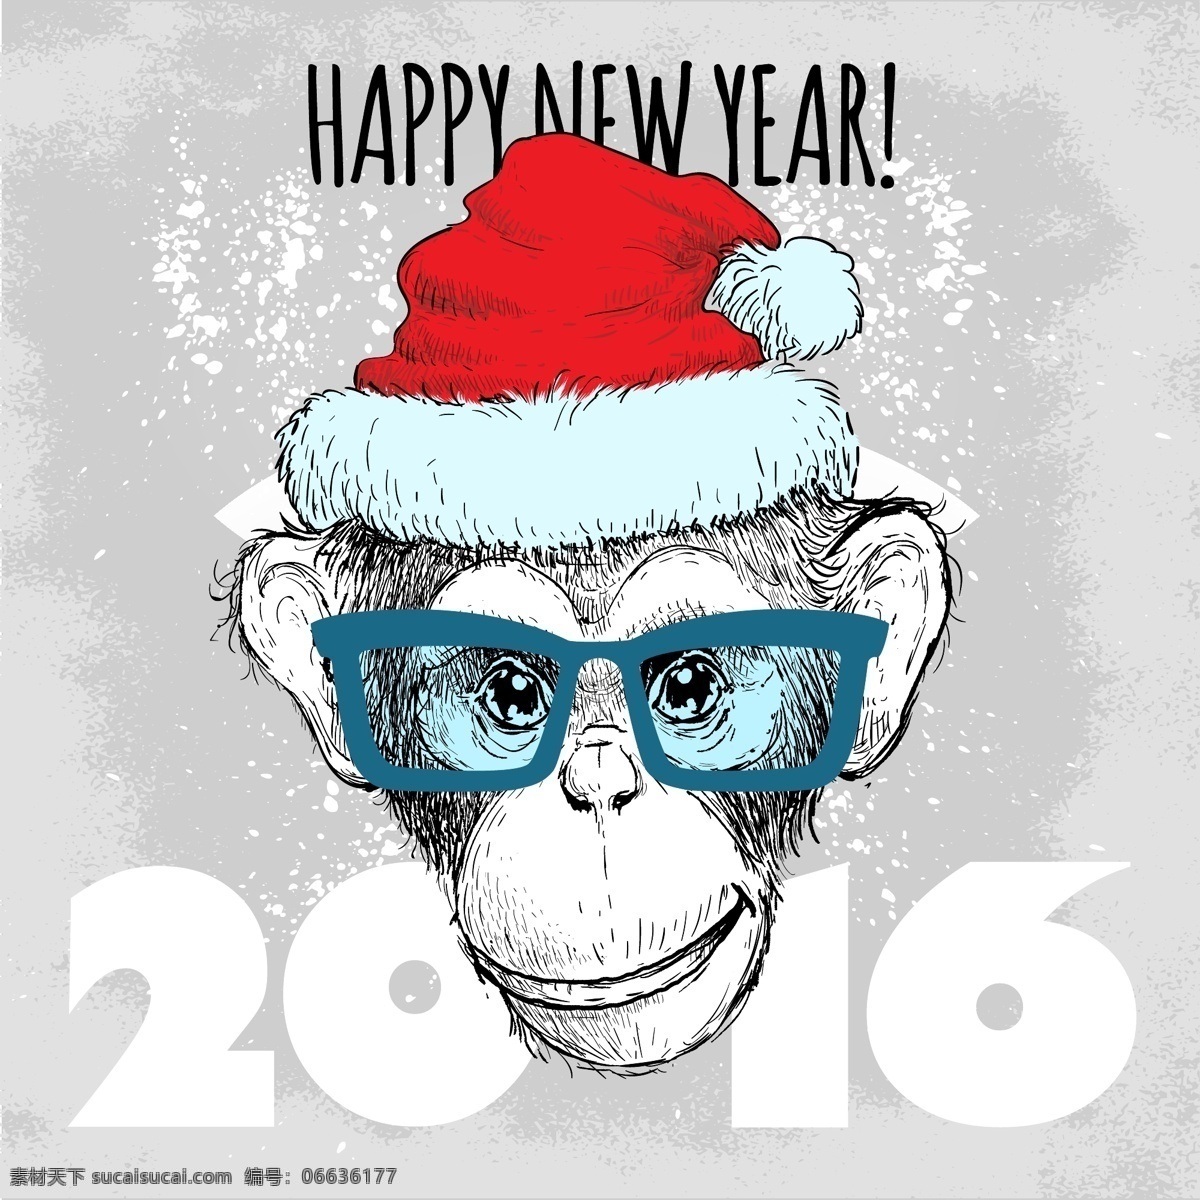 可爱 圣诞 猴子 插画 卡通 节日 圣诞帽子 动物 眼镜